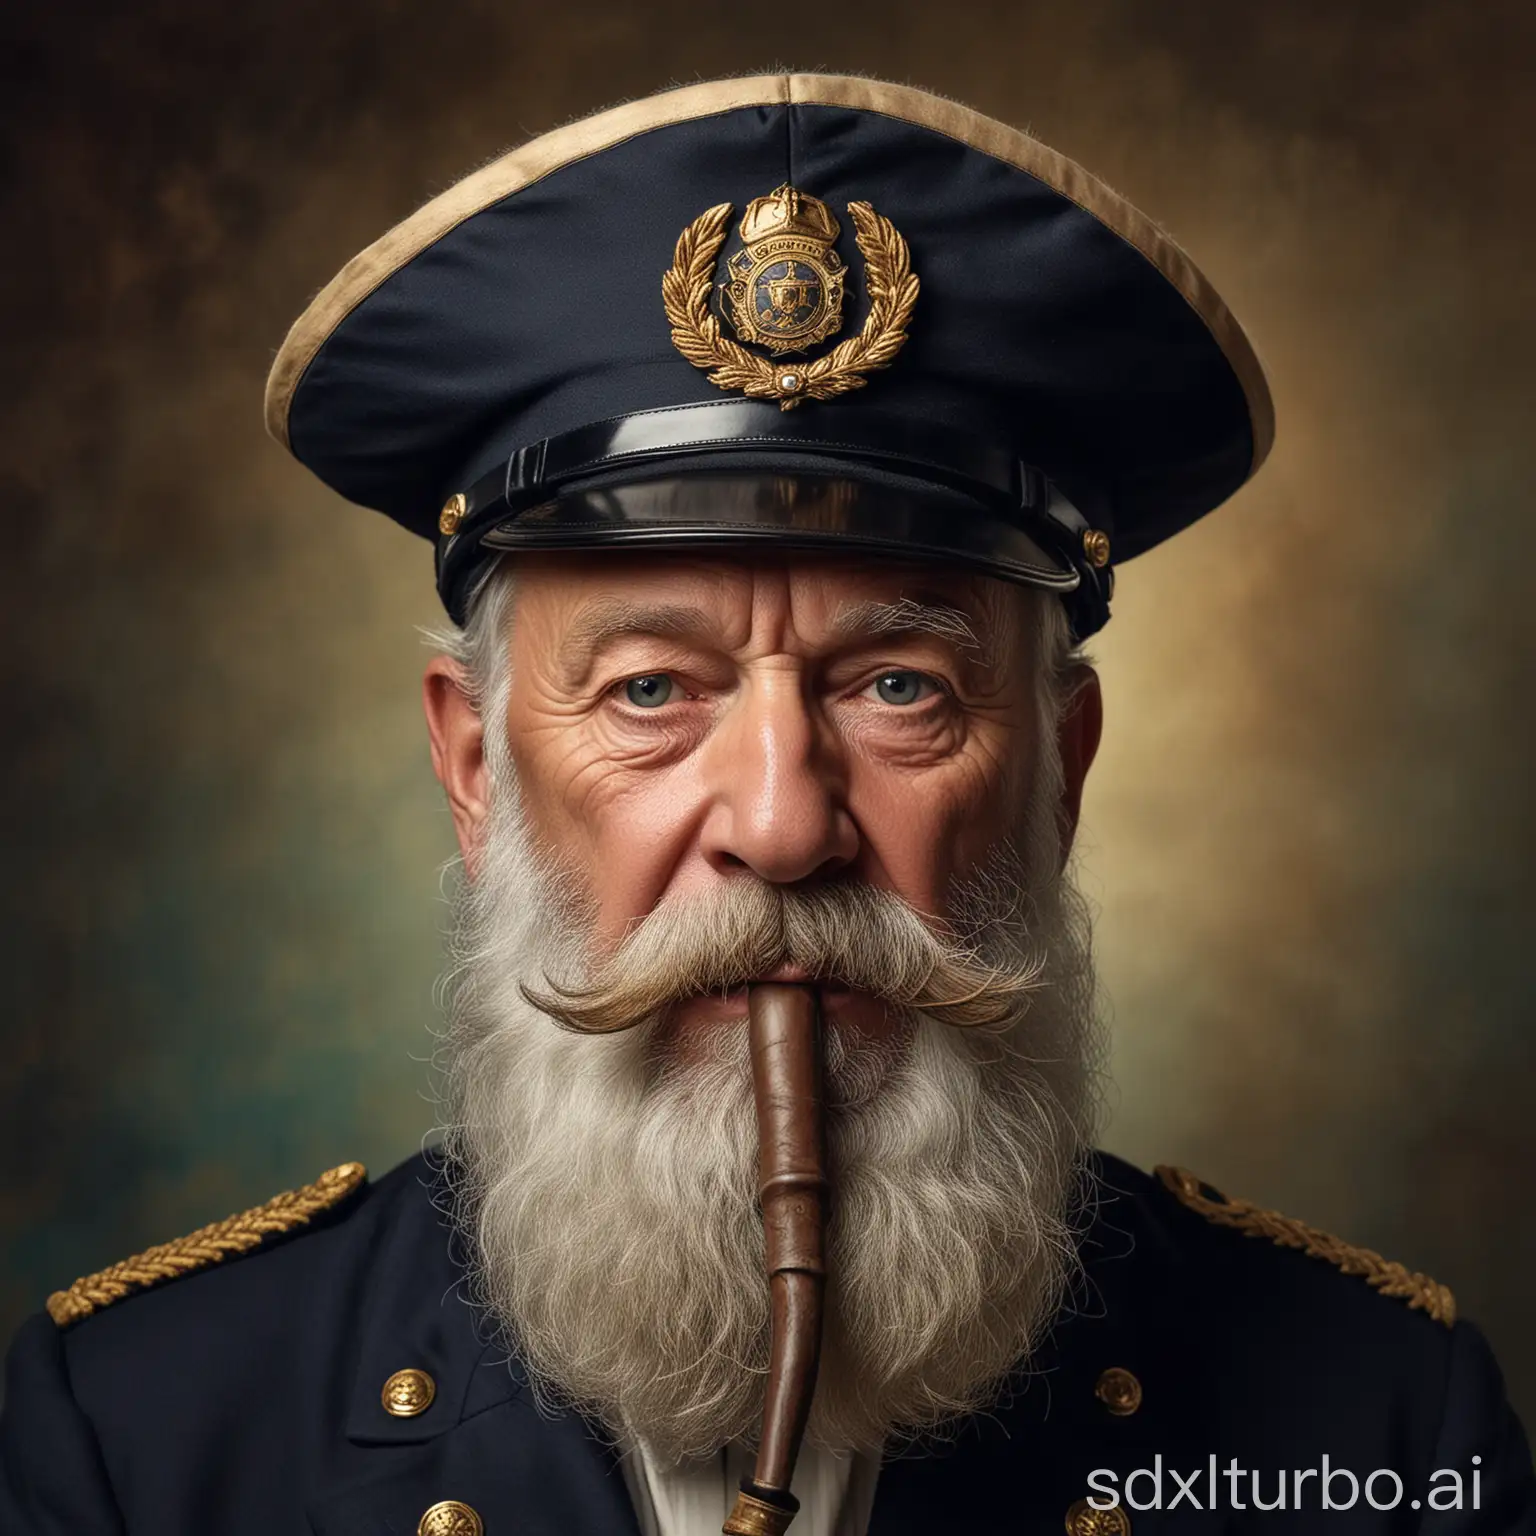 Foto superscharf. Porträt von einem alten Kapitän mit Pfeife im Mund und einer Kapitänsmütze. Er soll einen Vollbart haben, das Gesicht ist faltig.